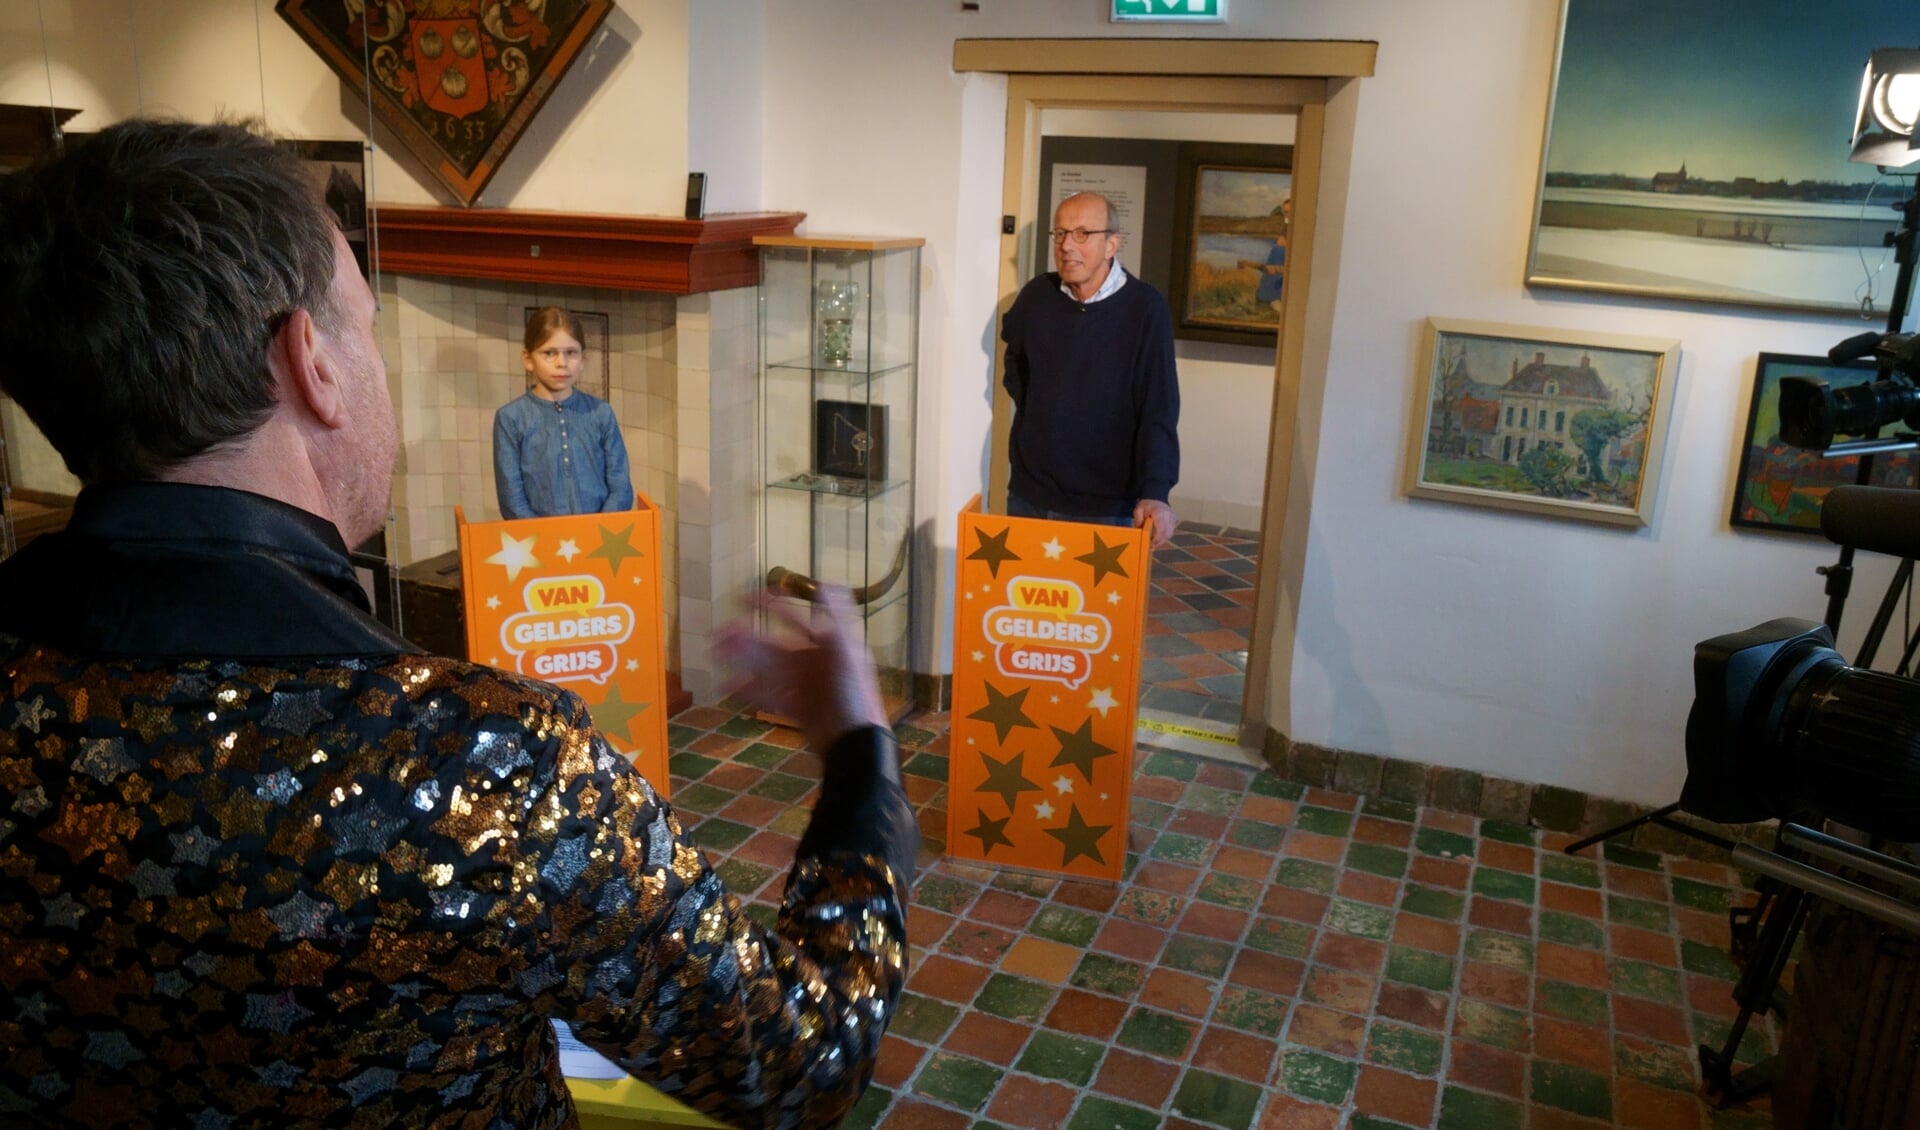 Vrijwilliger Duco Schotborgh en zijn kleinkind Koen beantwoorden vragen tijdens de ‘grootouder-kleinkind quiz’. Quizmaster Jochem van Gelder stelt hun kennis op de proef.